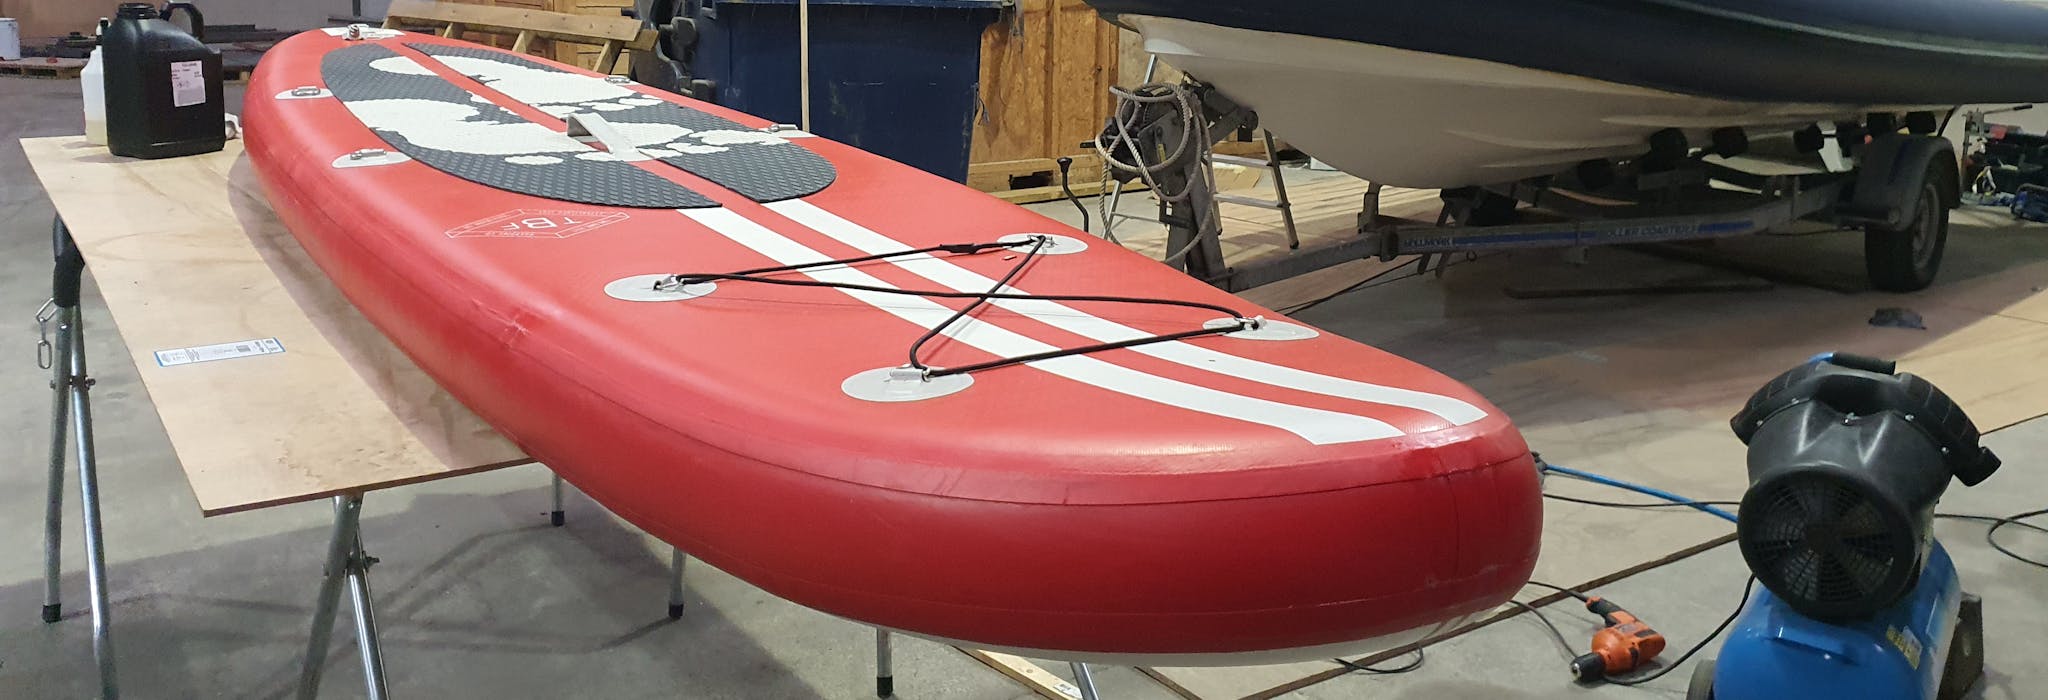 SUP paddleboard repair, made from pvc seam split repair